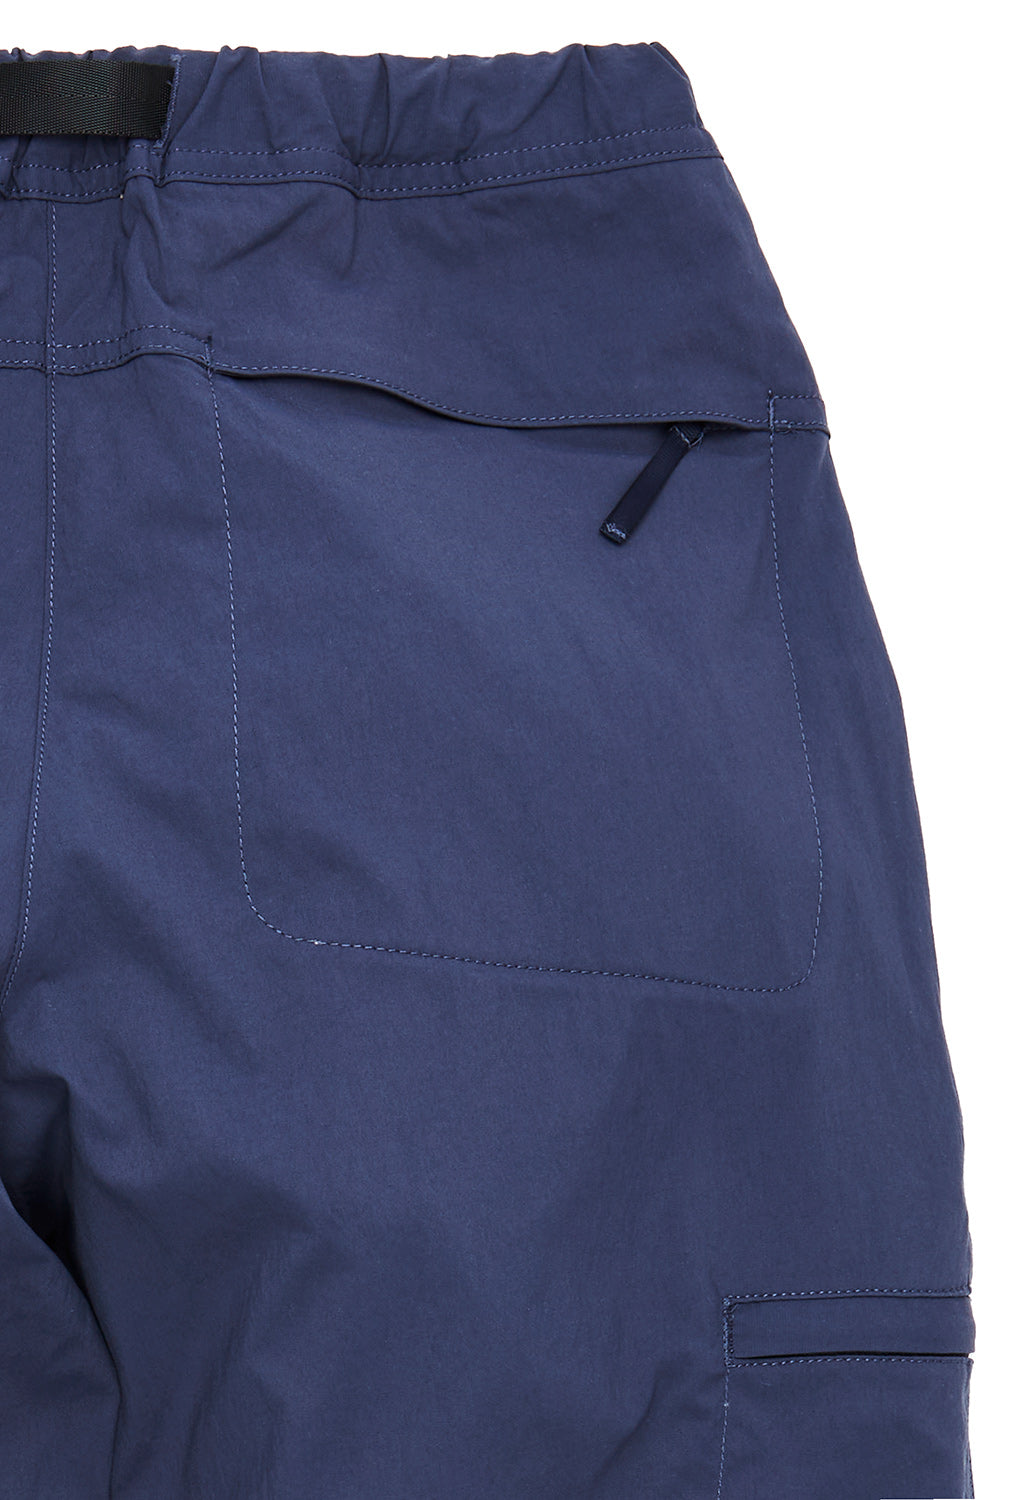 Gramicci Men's Softshell Nylon Pants - Navy